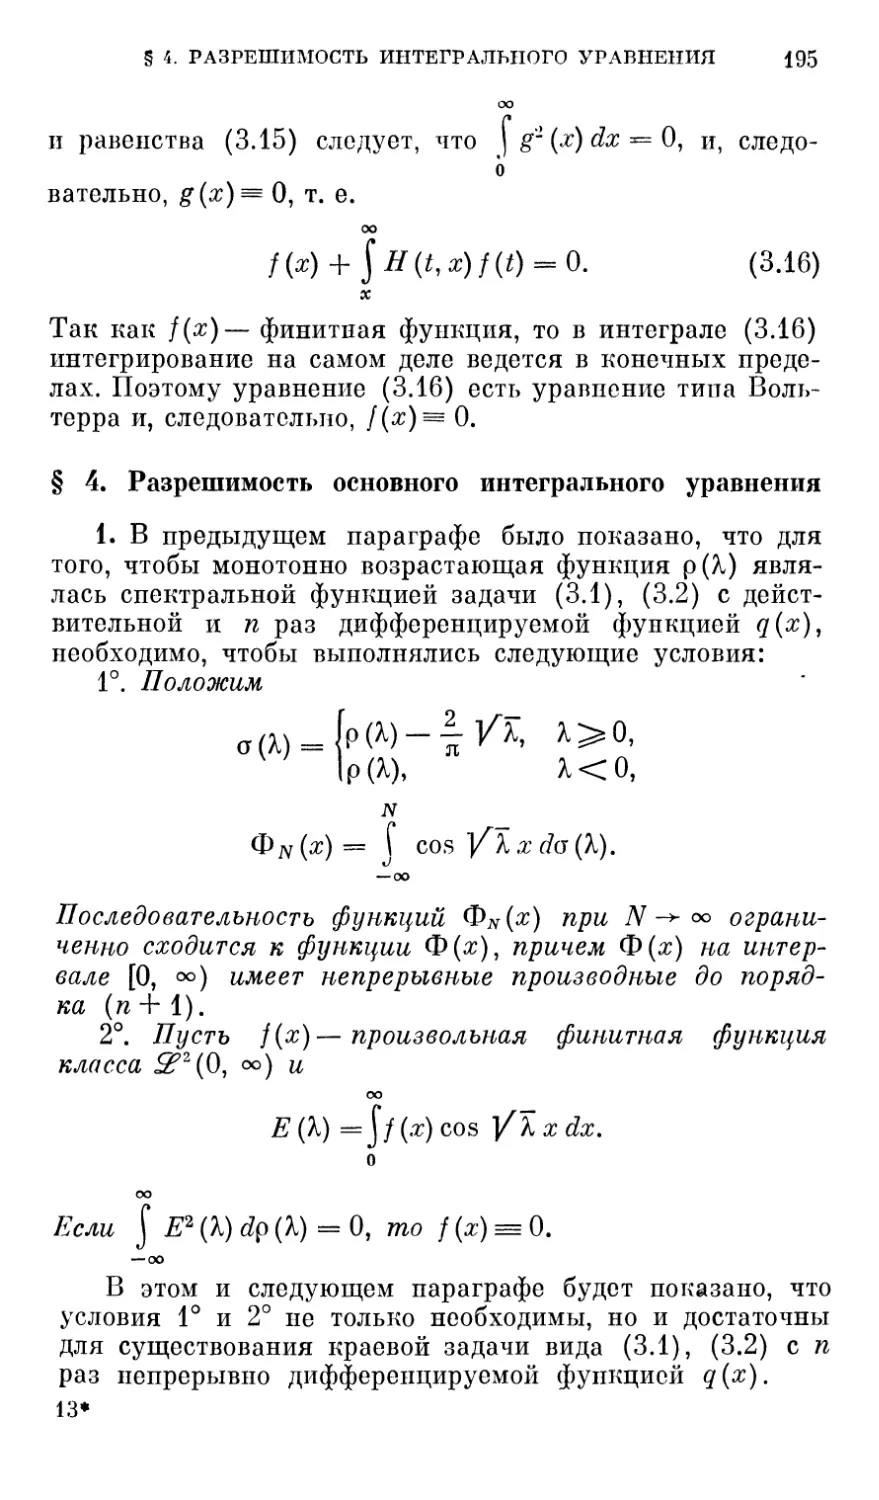 § 4. Разрешимость основного интегрального уравнения